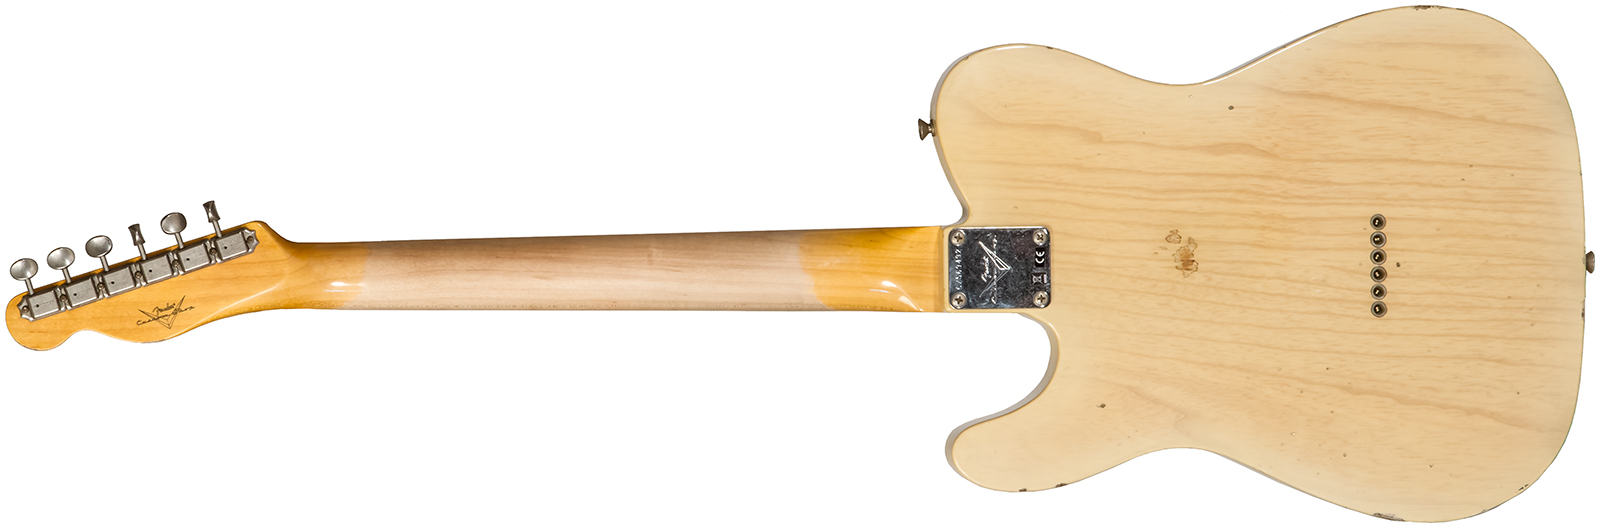 Fender Custom Shop Tele 1960 2s Ht Rw #cz569492 - Relic Natural Blonde - Guitare Électrique Forme Tel - Variation 1